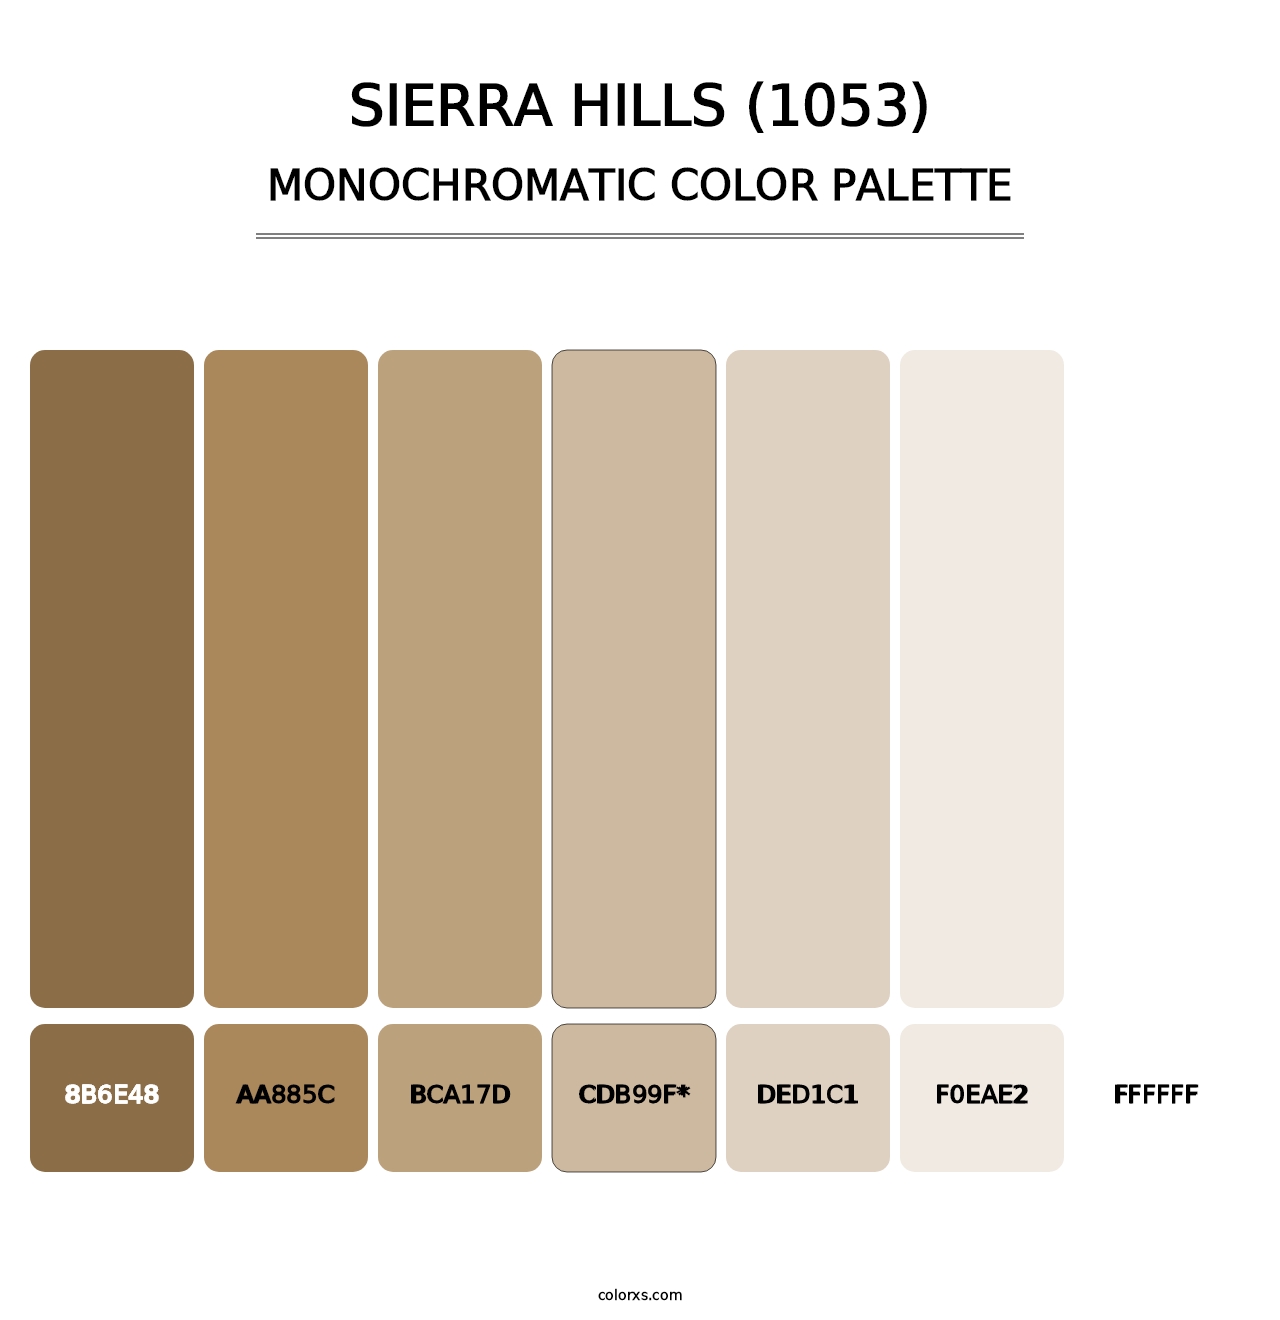 Sierra Hills (1053) - Monochromatic Color Palette